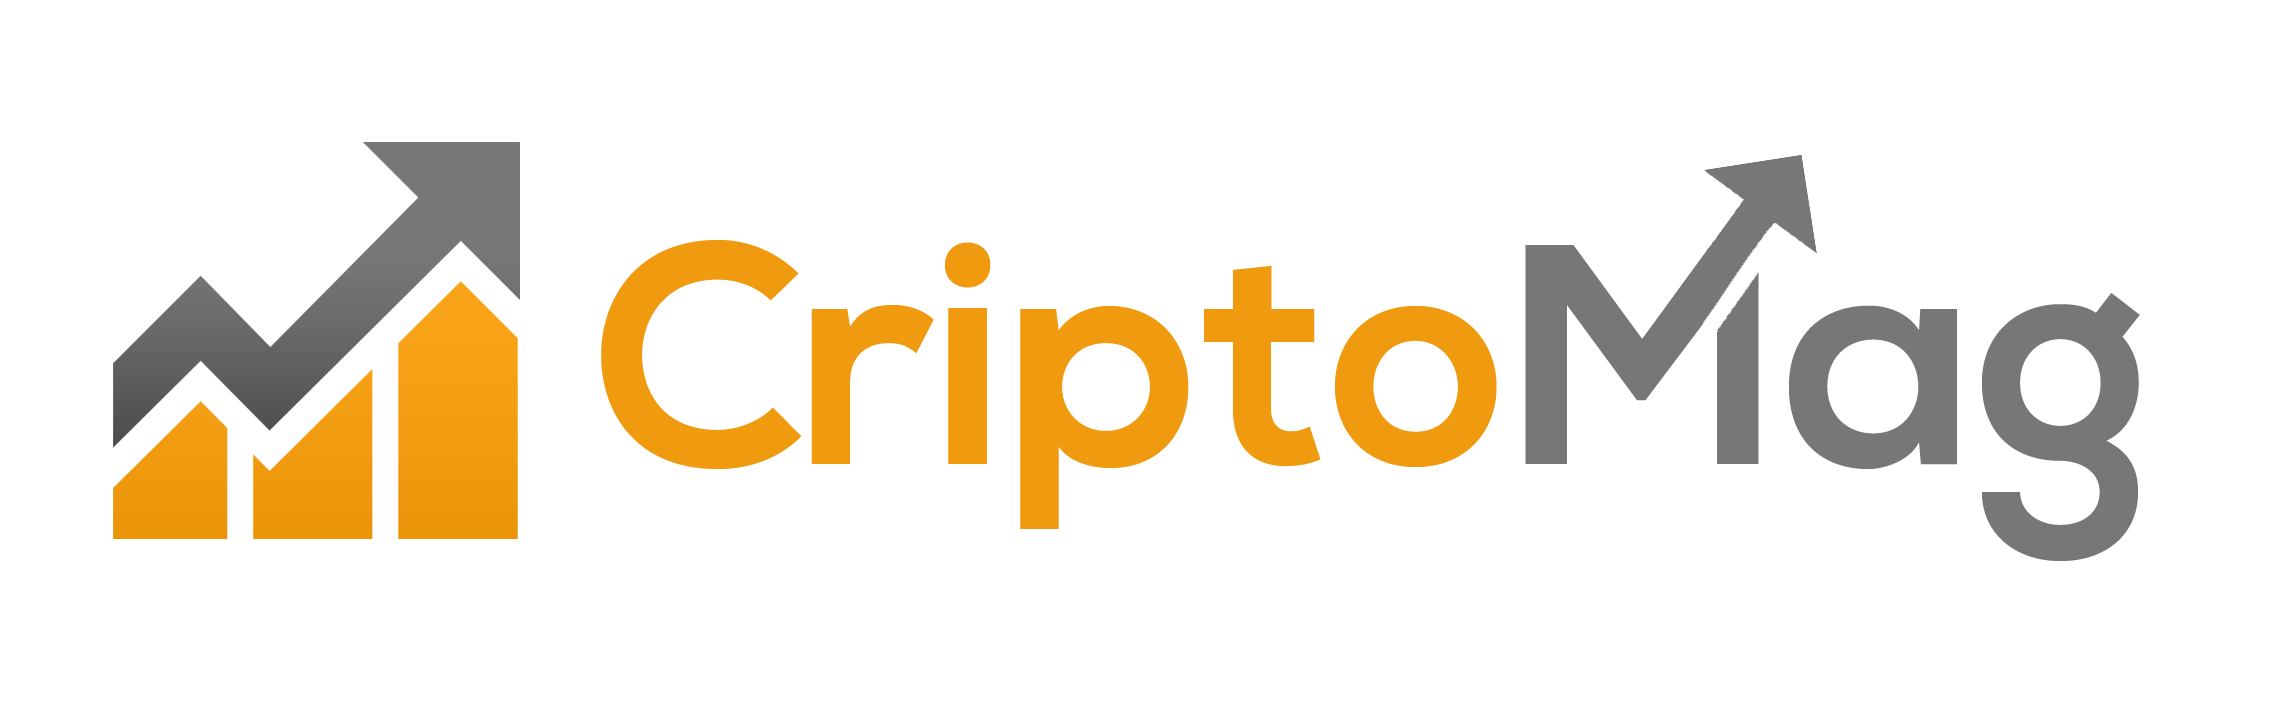 Criptomag - Il primo sito italiano su bitcoin e criptovalute